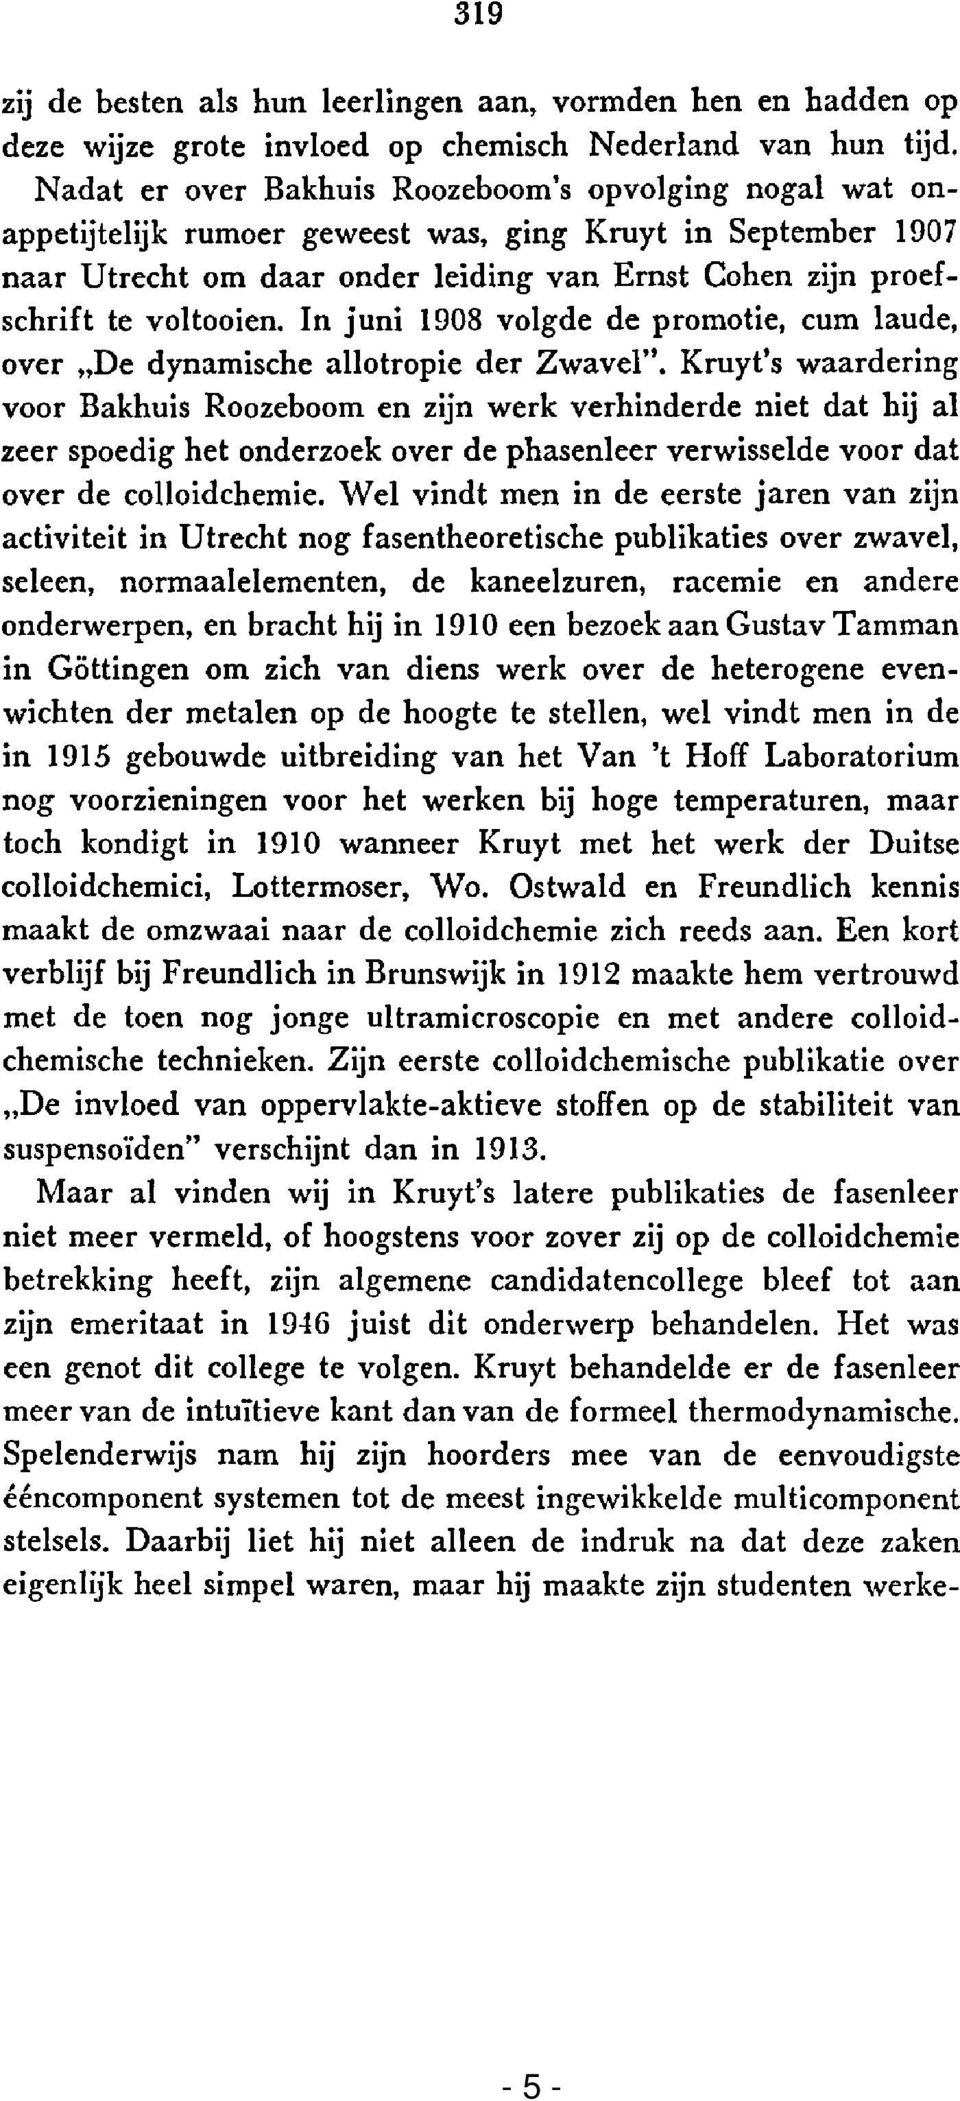 voltooien. In juni 1908 volgde de promotie, cum laude, over "De dynamische allotropie der Zwavel".